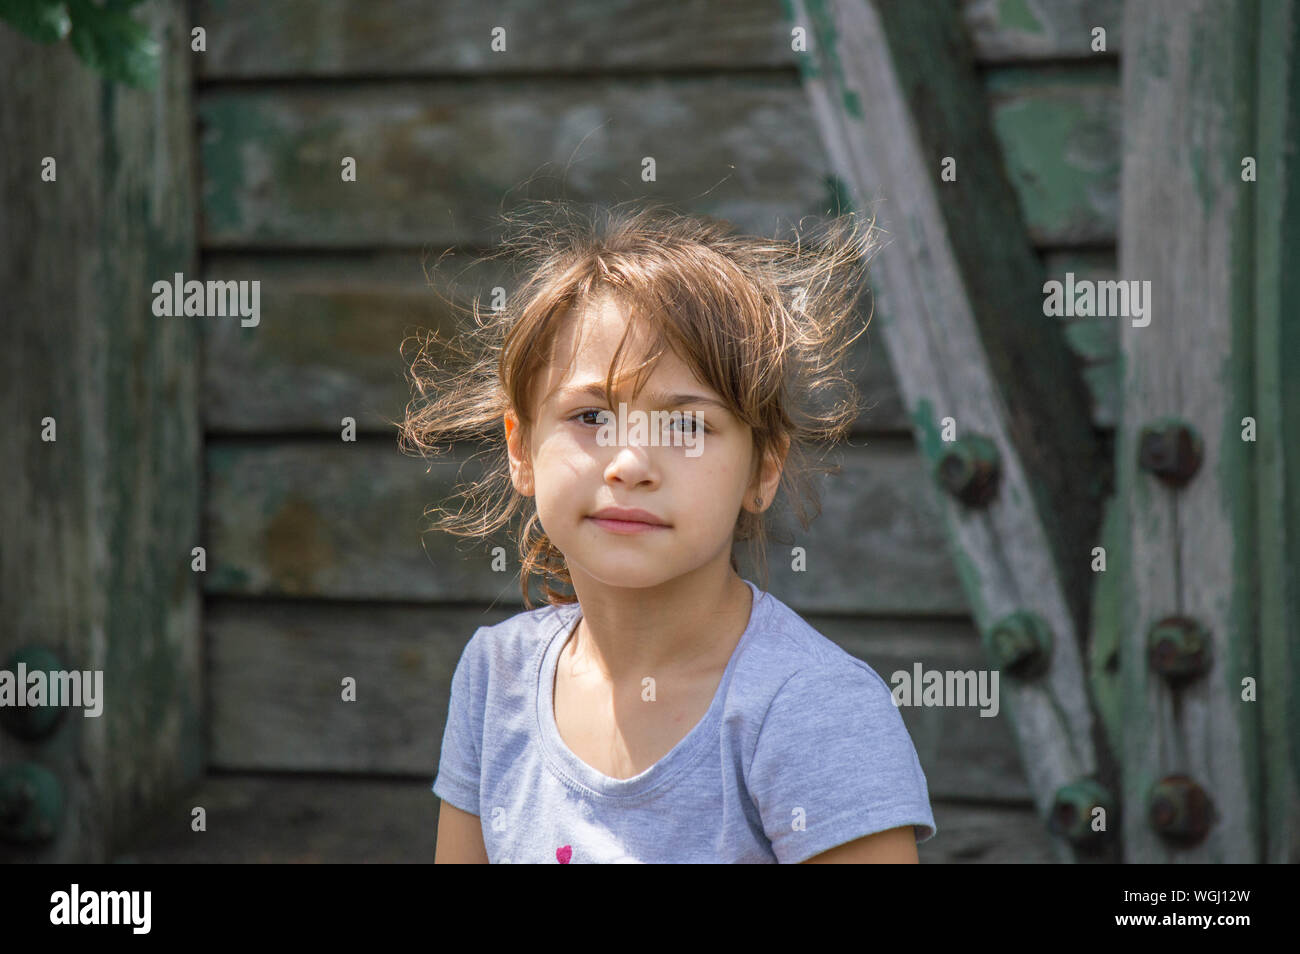 Portrait de jeune fille contre l'équipement de jeu en bois Banque D'Images